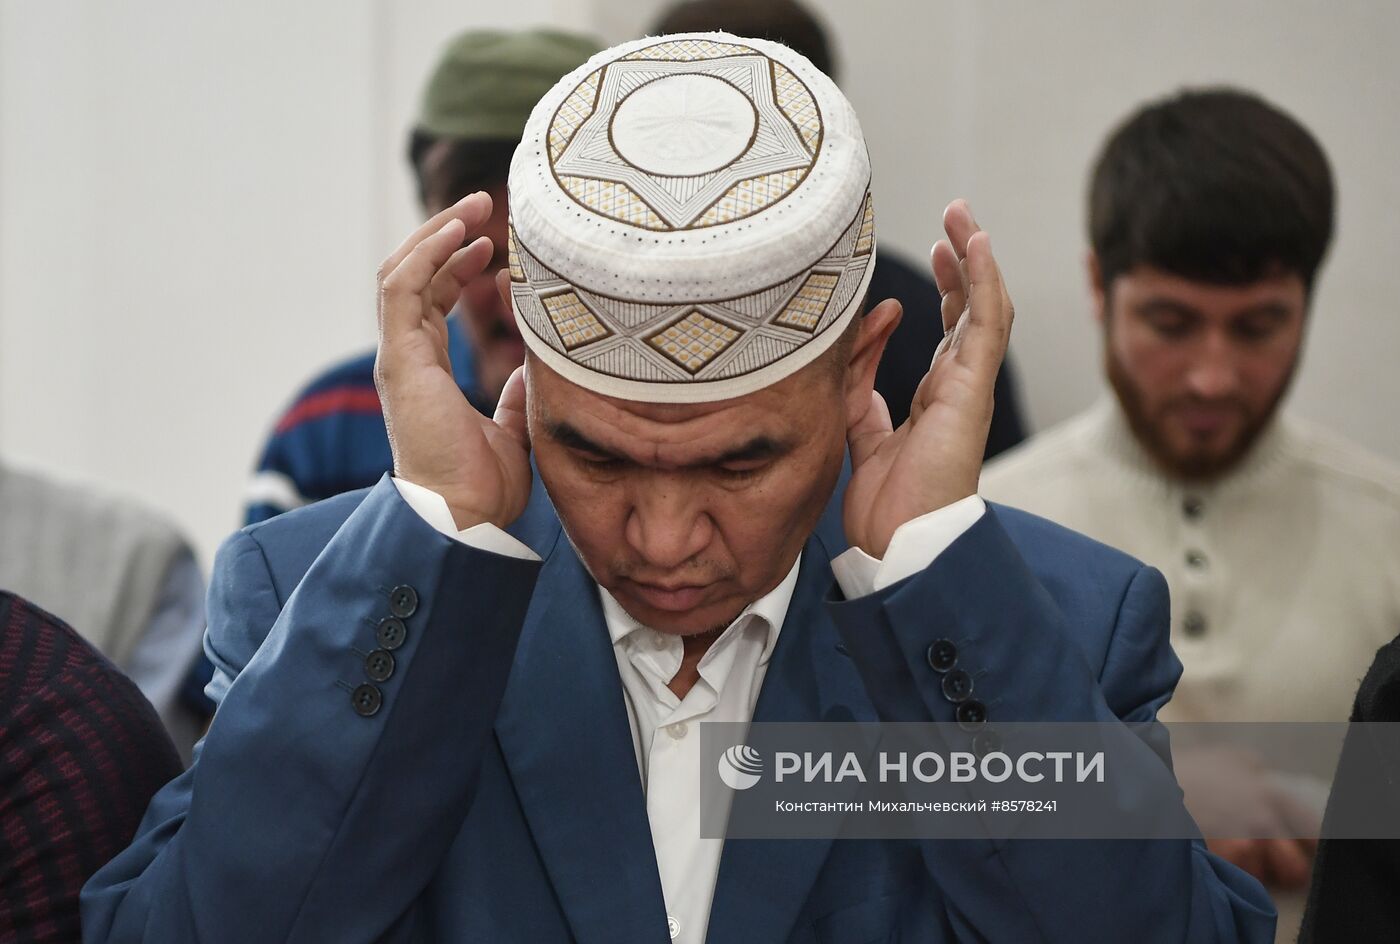 Первое богослужение в Соборной мечети Крыма